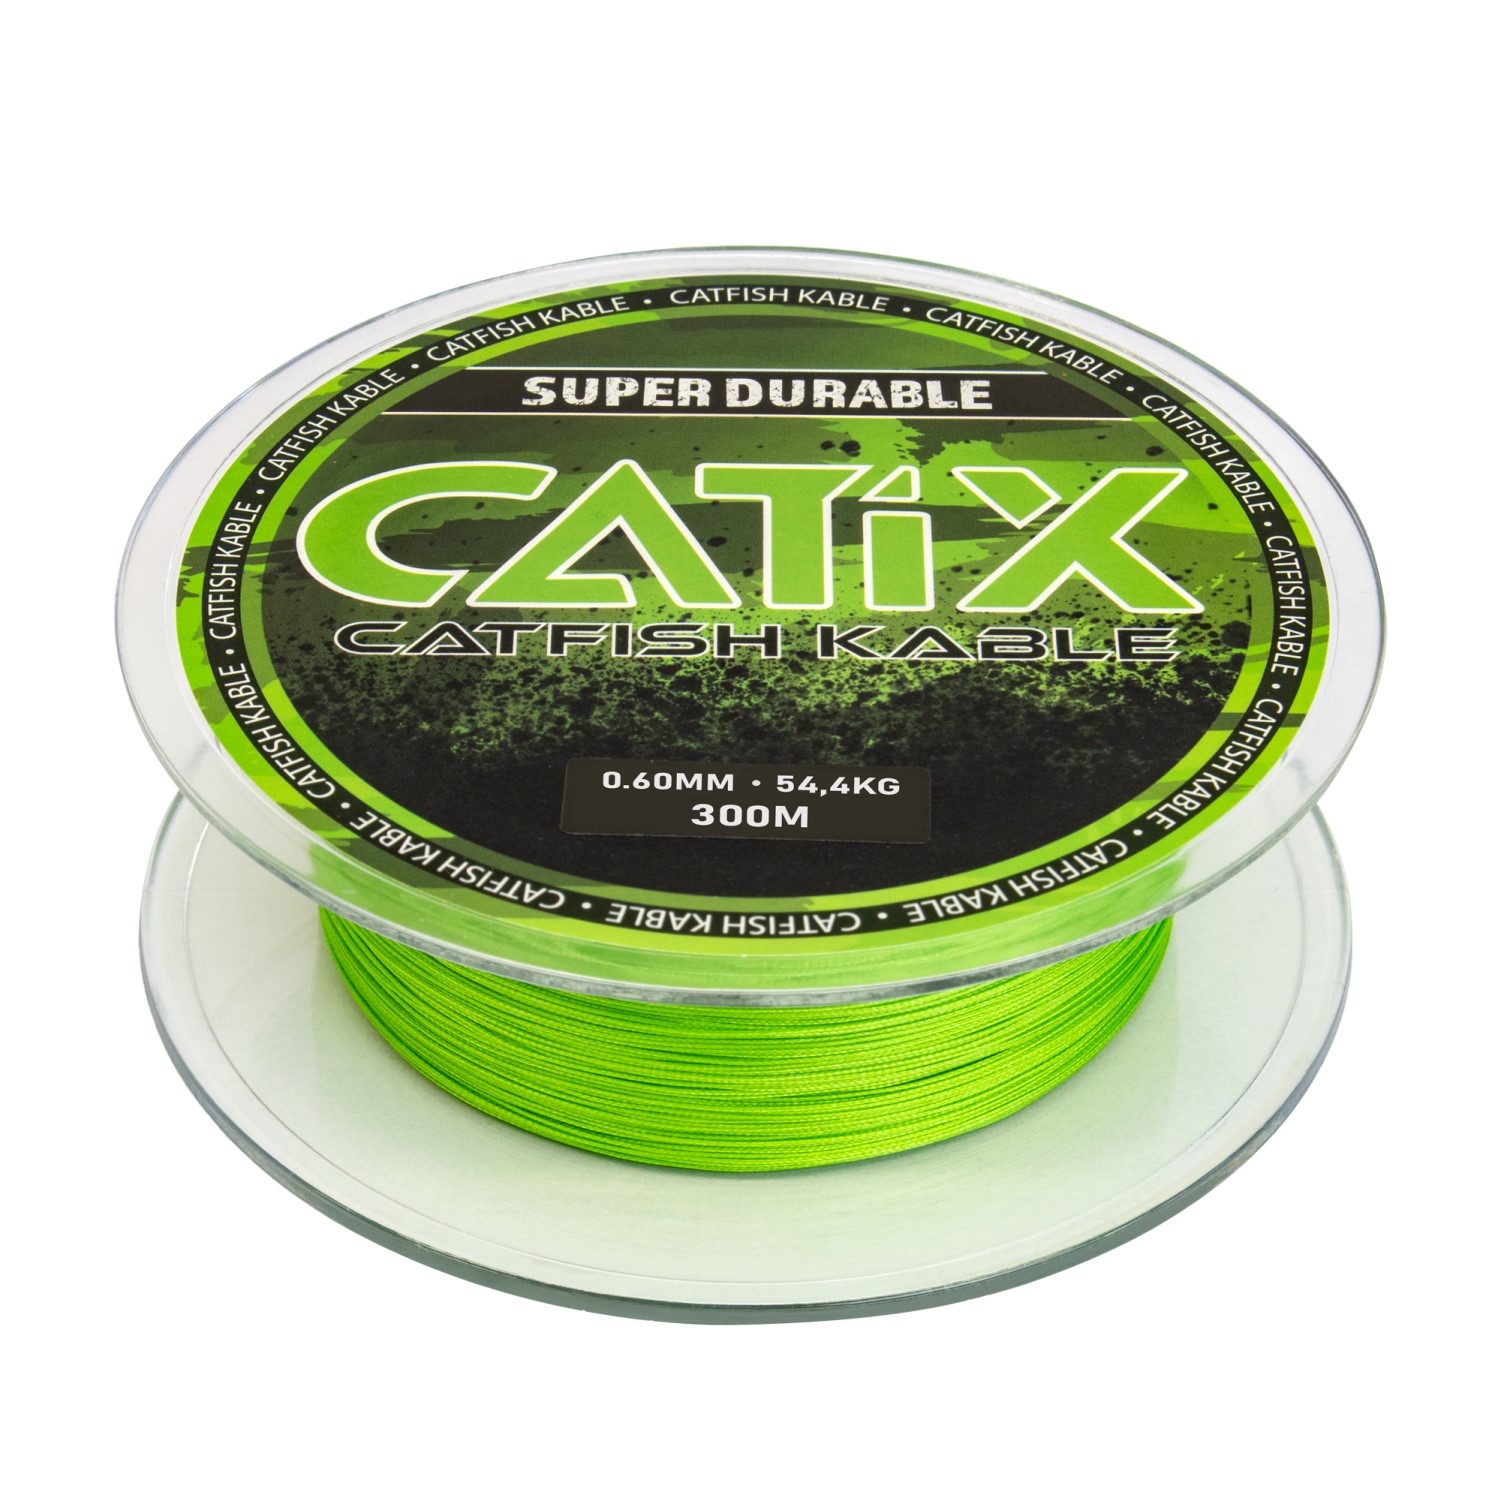 Catix Cat-Kable Meerval Gevlochten lijn 300m 54,4kg 0,60mm